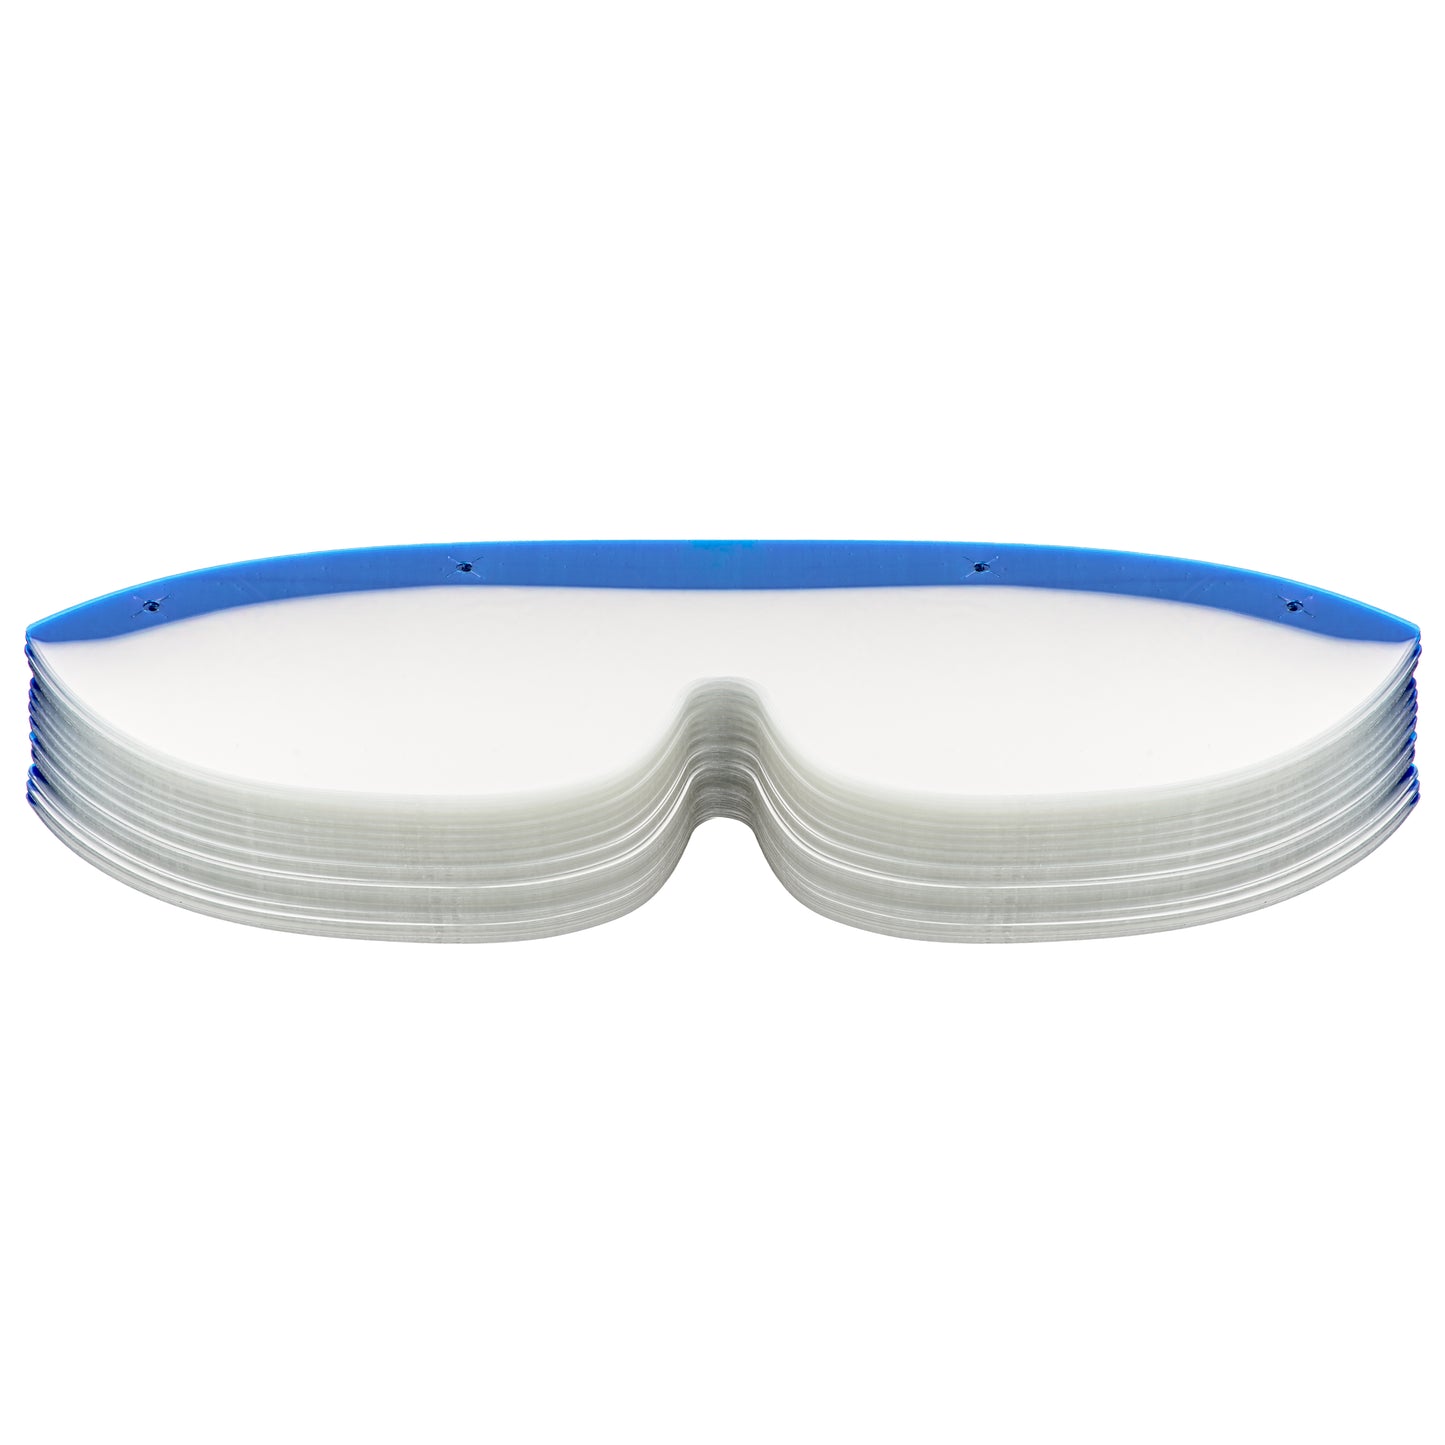 Value-Shield® Excel Eye Shield Lenses - Designed to fit DeRoyal Speyes Frames (100 lenses/case)